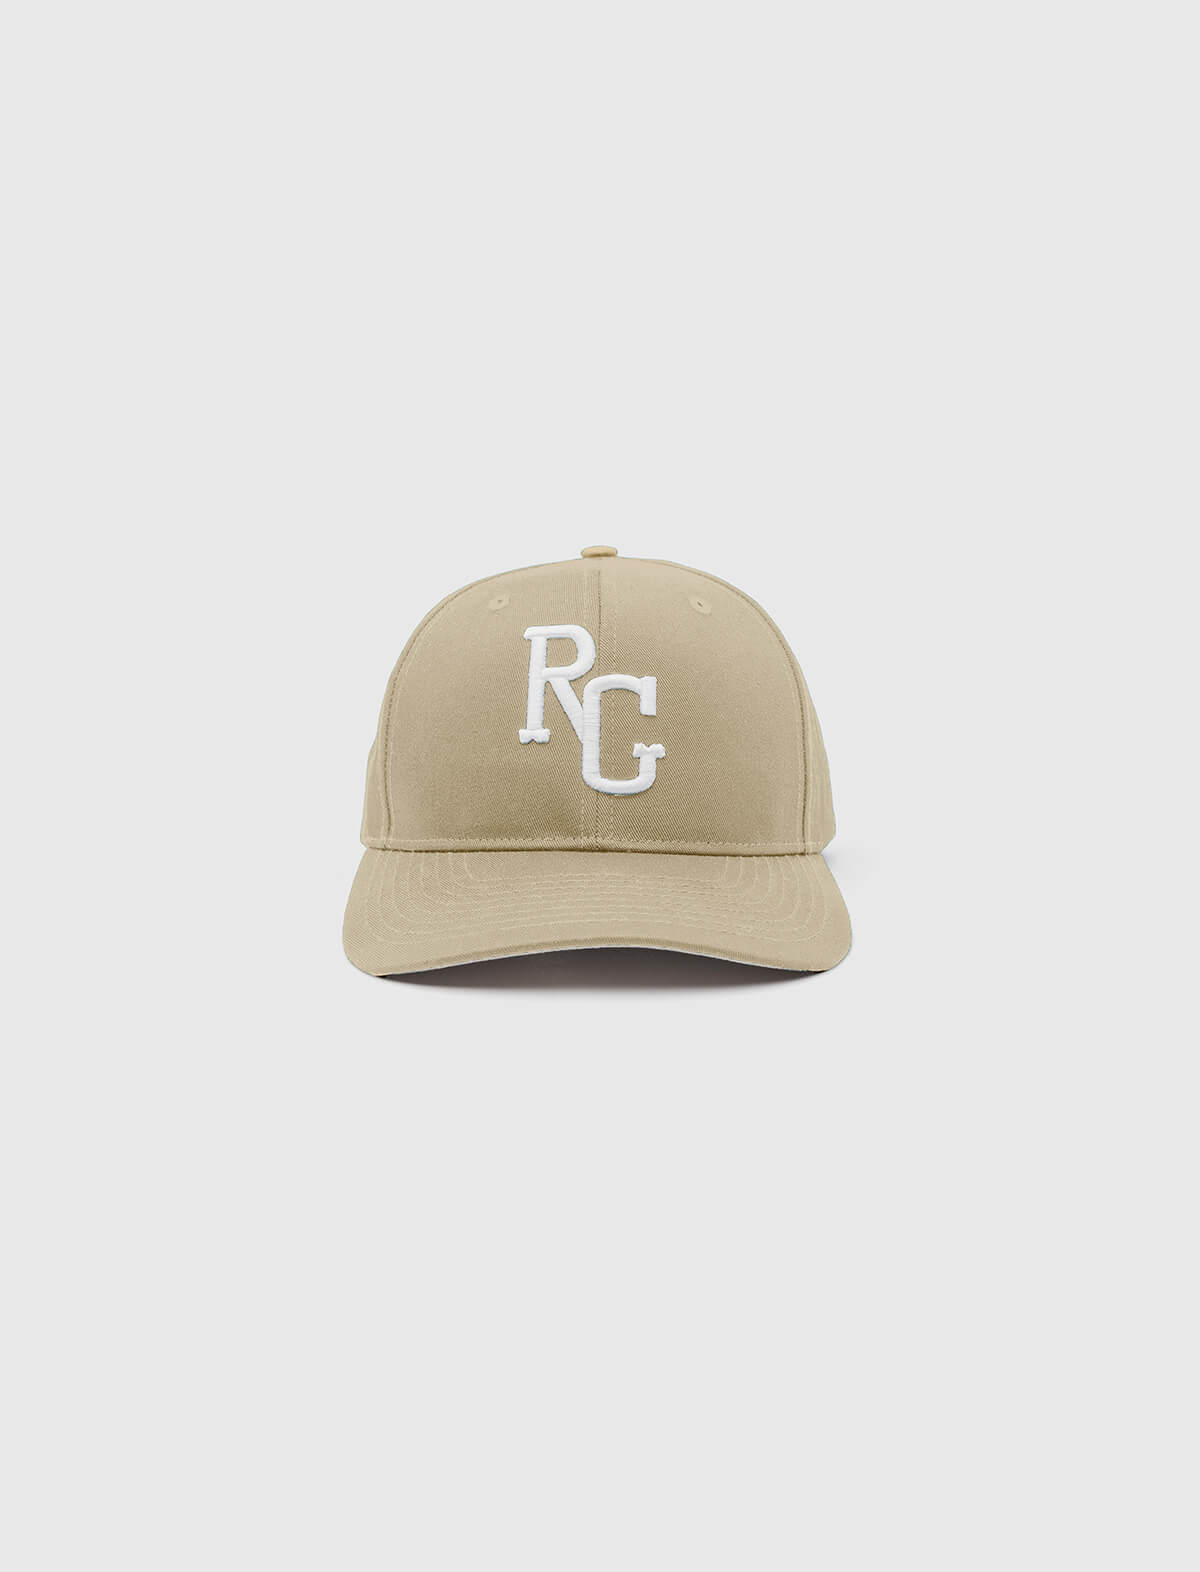 RADDA GOLF RG Hat in Sand